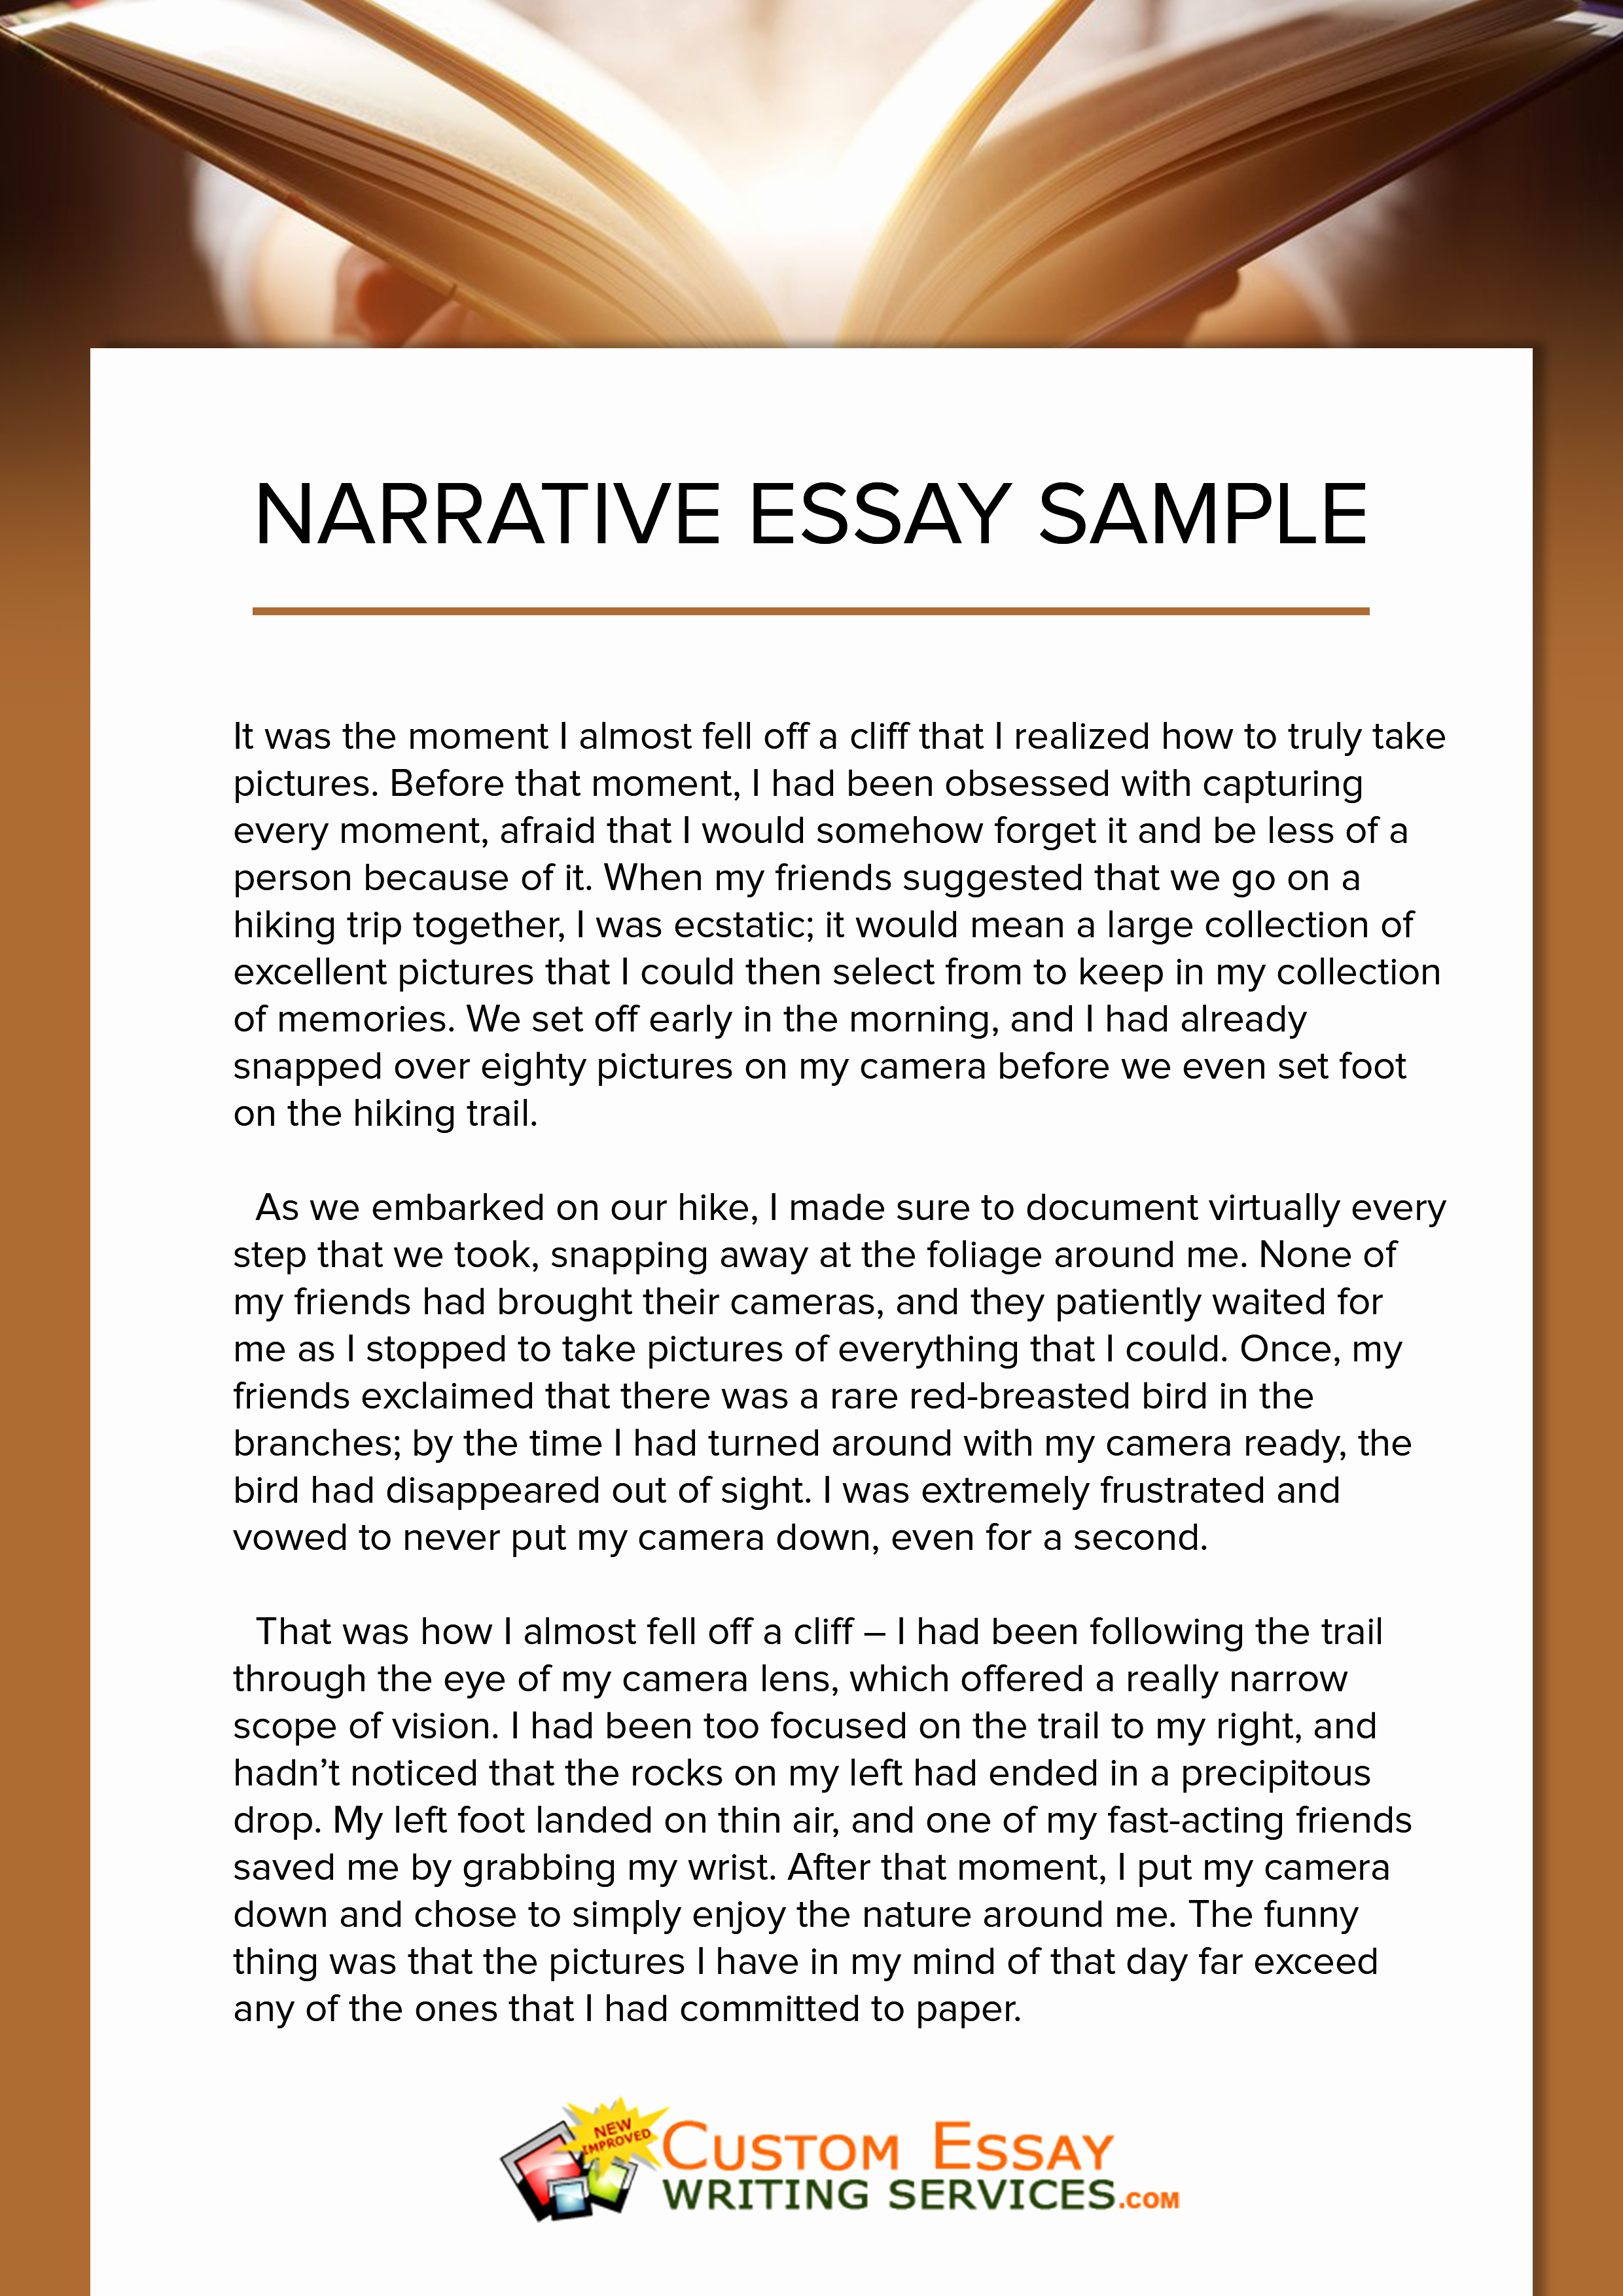 any ideas for a narrative essay